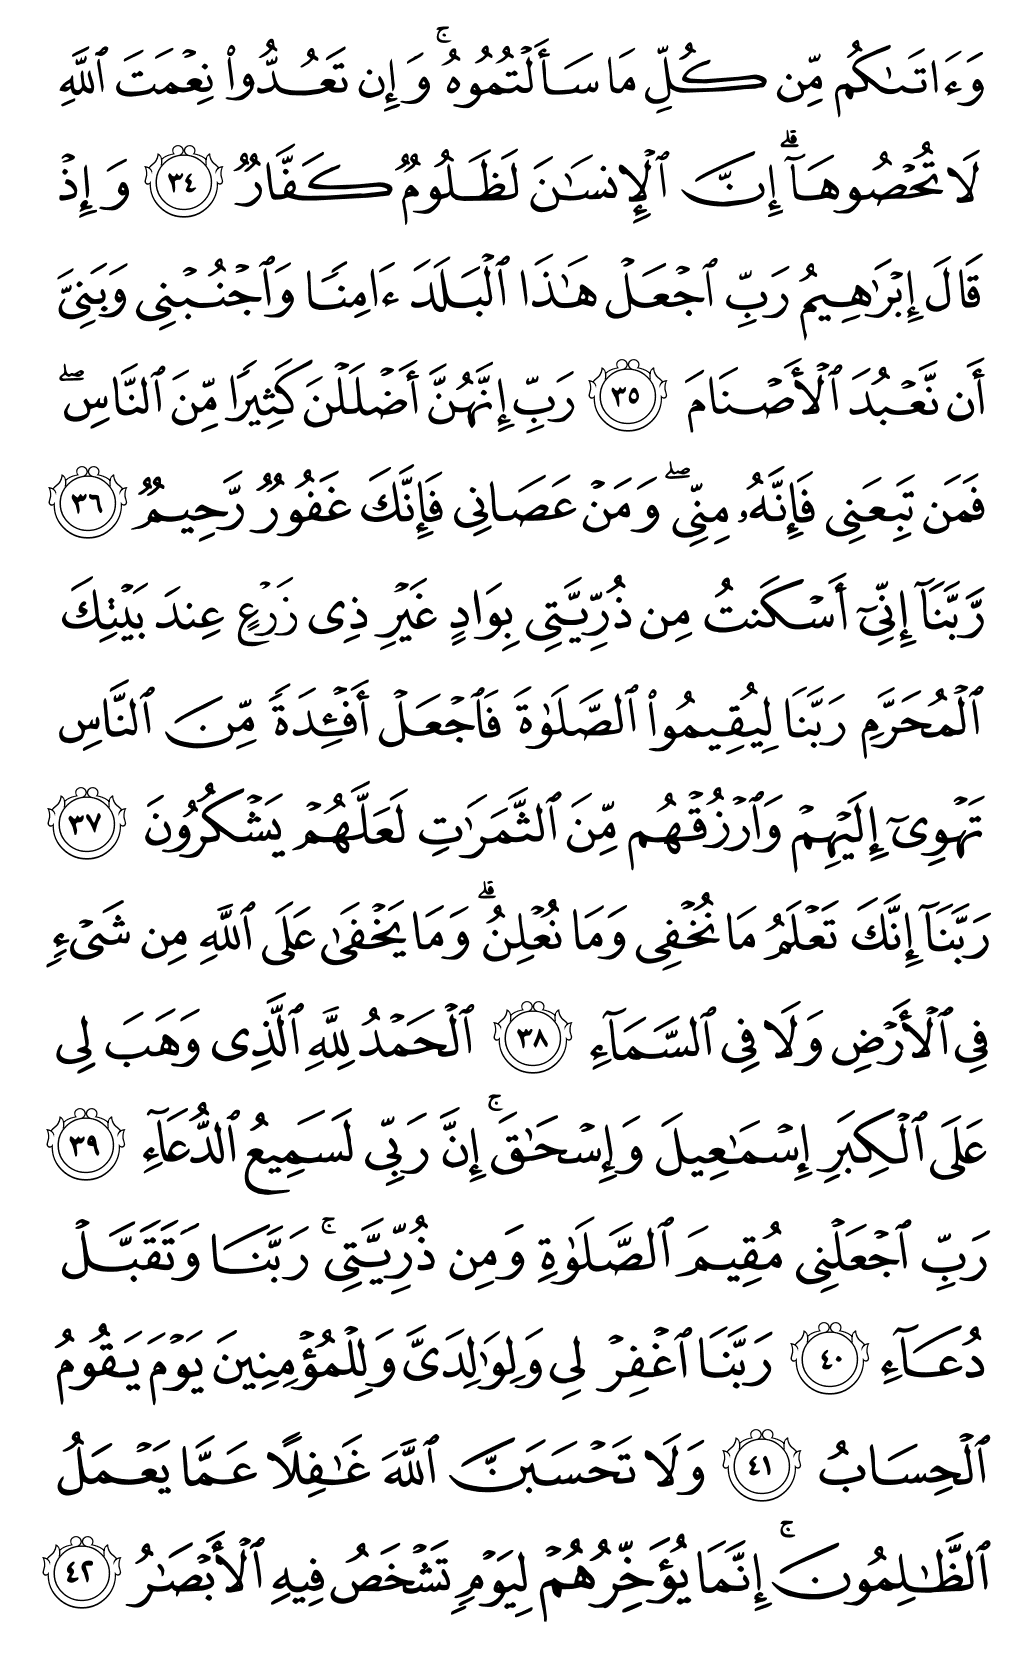 الصفحة رقم 260 من القرآن الكريم